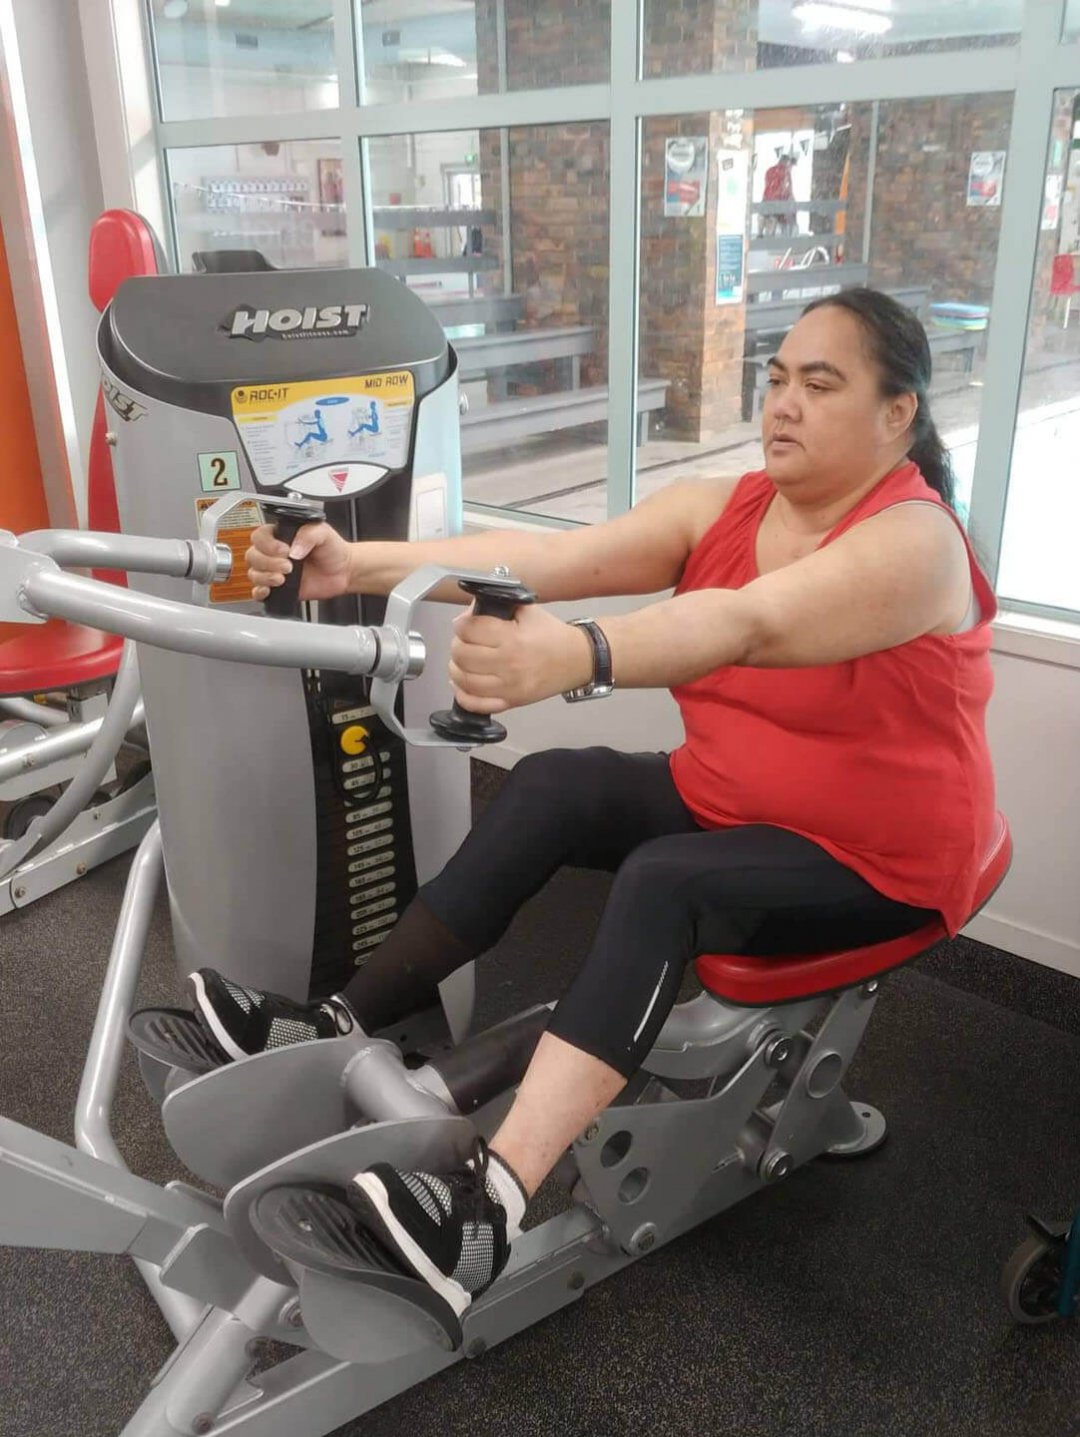 Teresa on exercising equipment